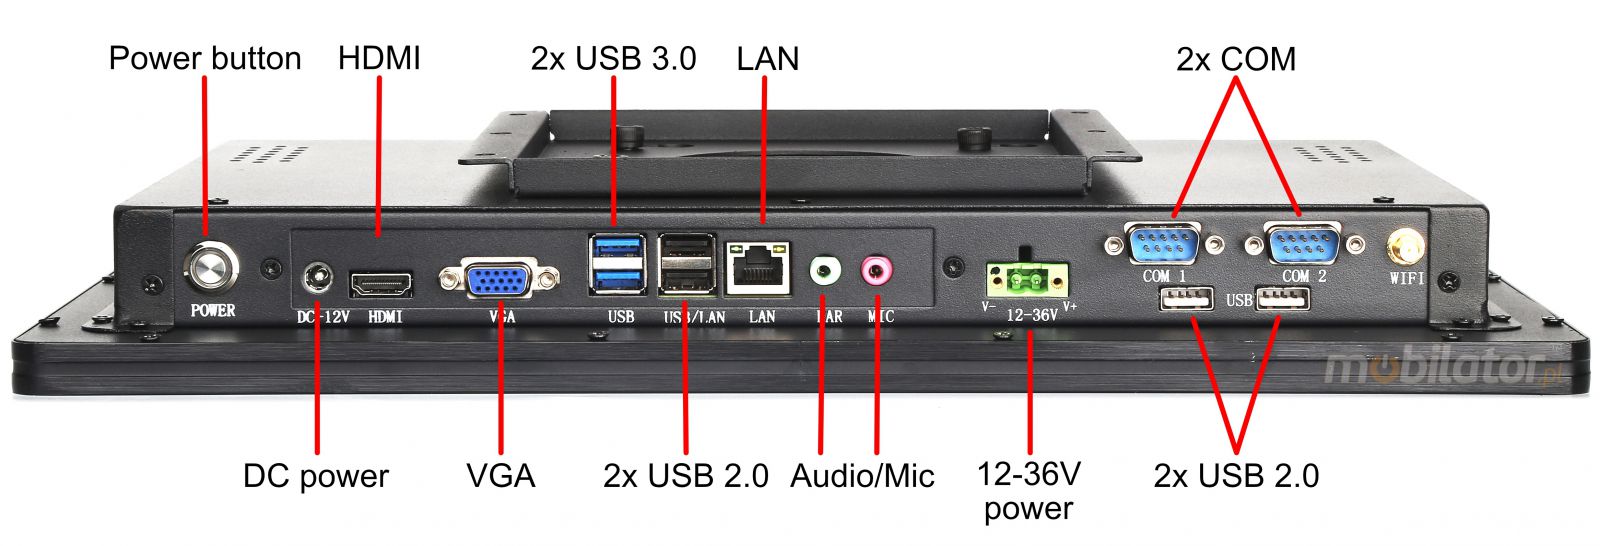 BiBOX-215PC1 (i3-4005U) v.7 - 8GB RAM Panelowy komputer z dotykowym ekranem, (praca na systemach: Windows 10 i Linux) WiFi, z dyskiem HDD (500 GB) oraz Bluetooth